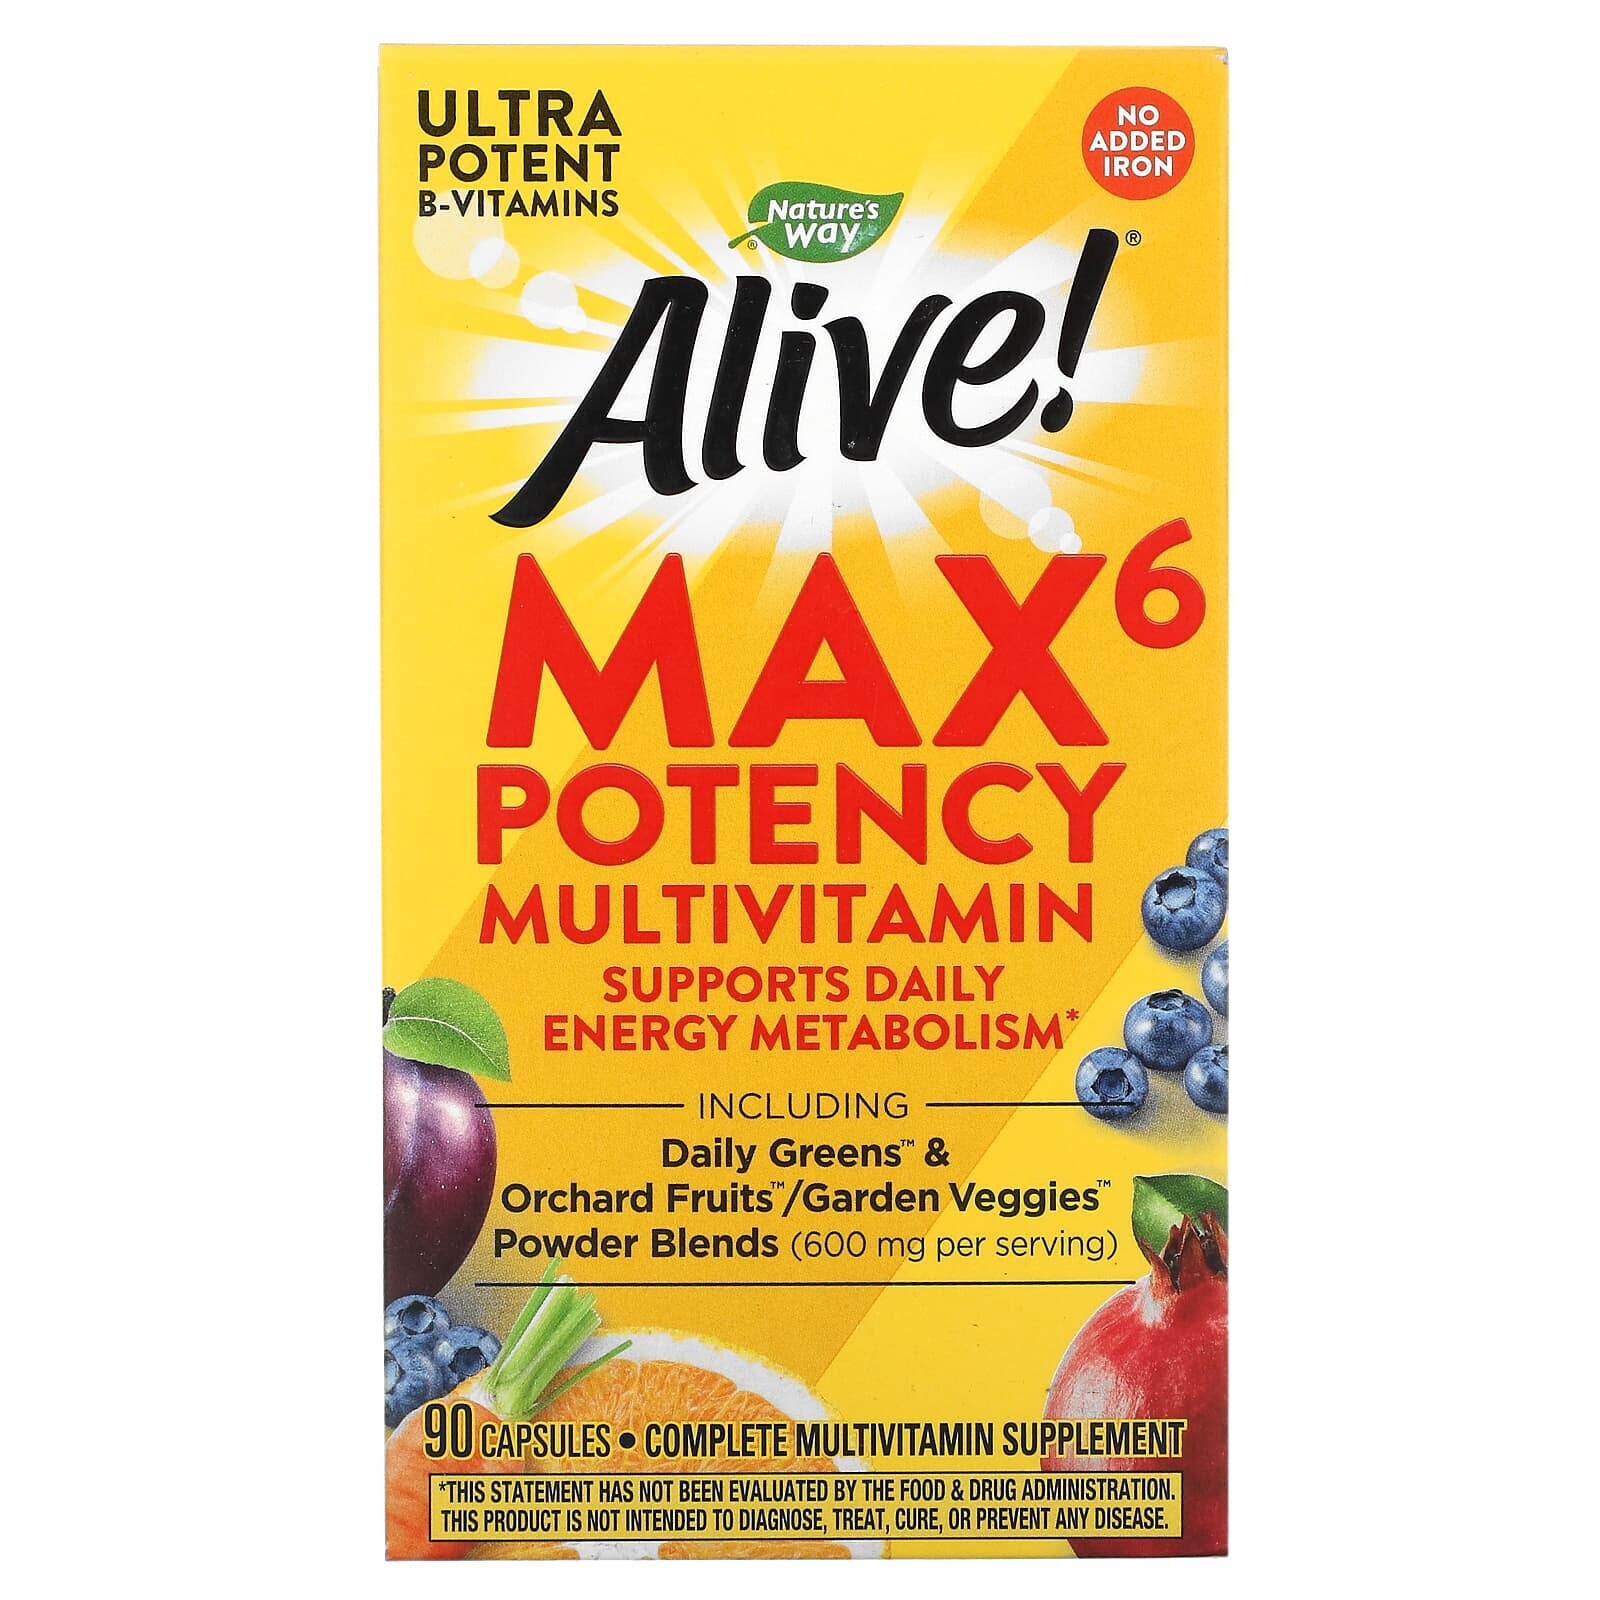 Натурес Вэй, Alive! Max6 Potency, мультивитамины повышенной эффективности, без добавления железа, 90 капсул